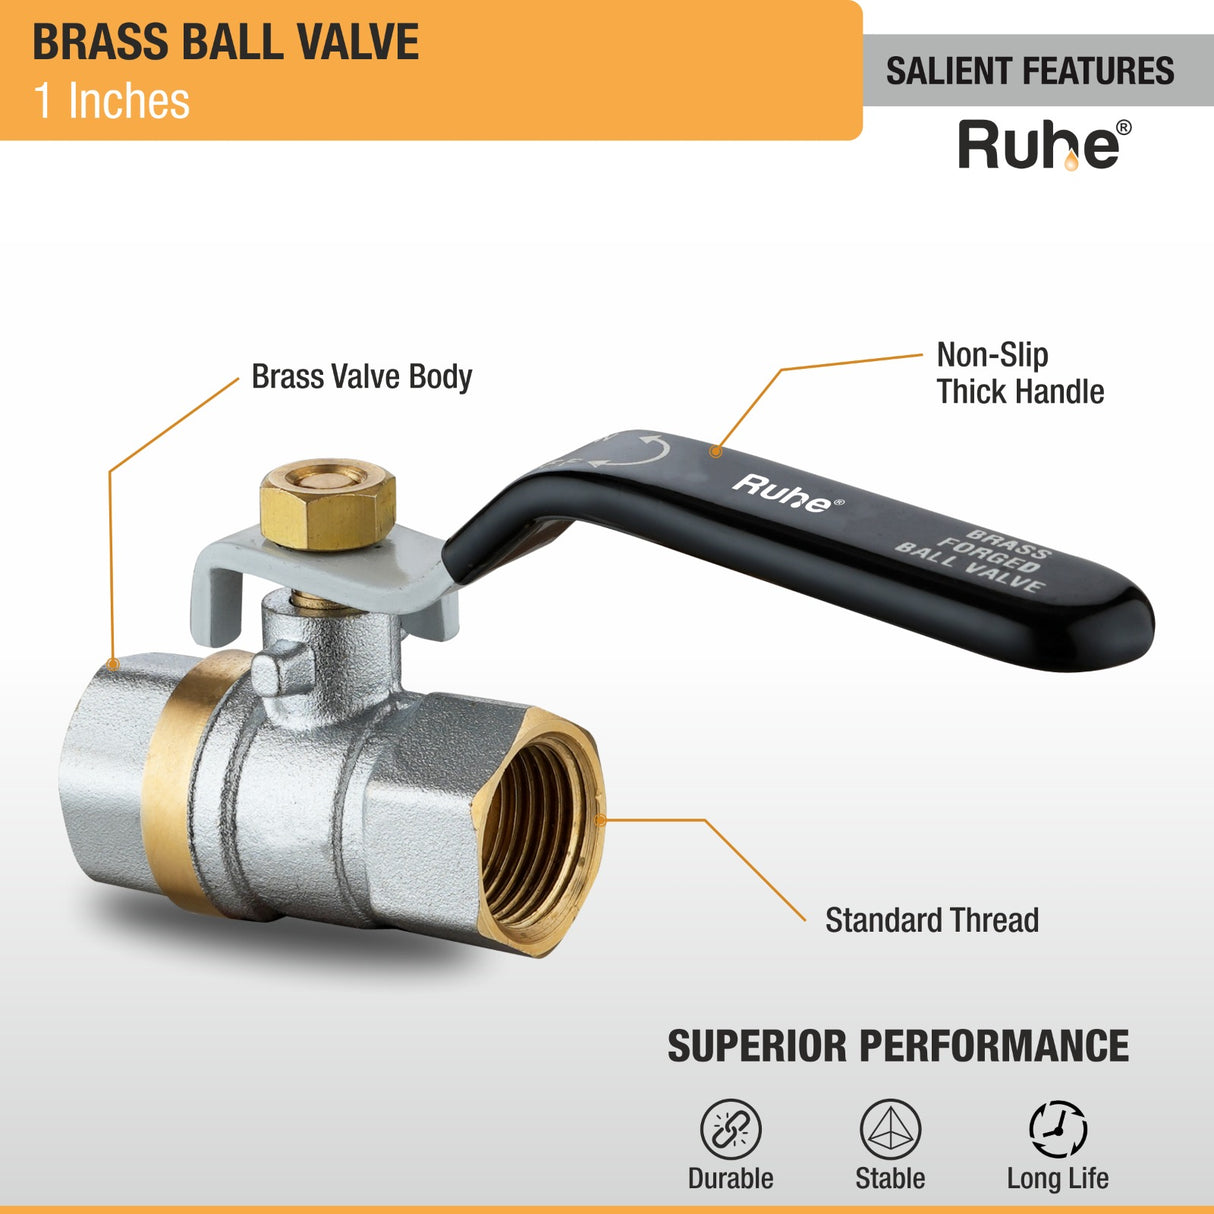 Brass Ball Valve (1 Inch) features